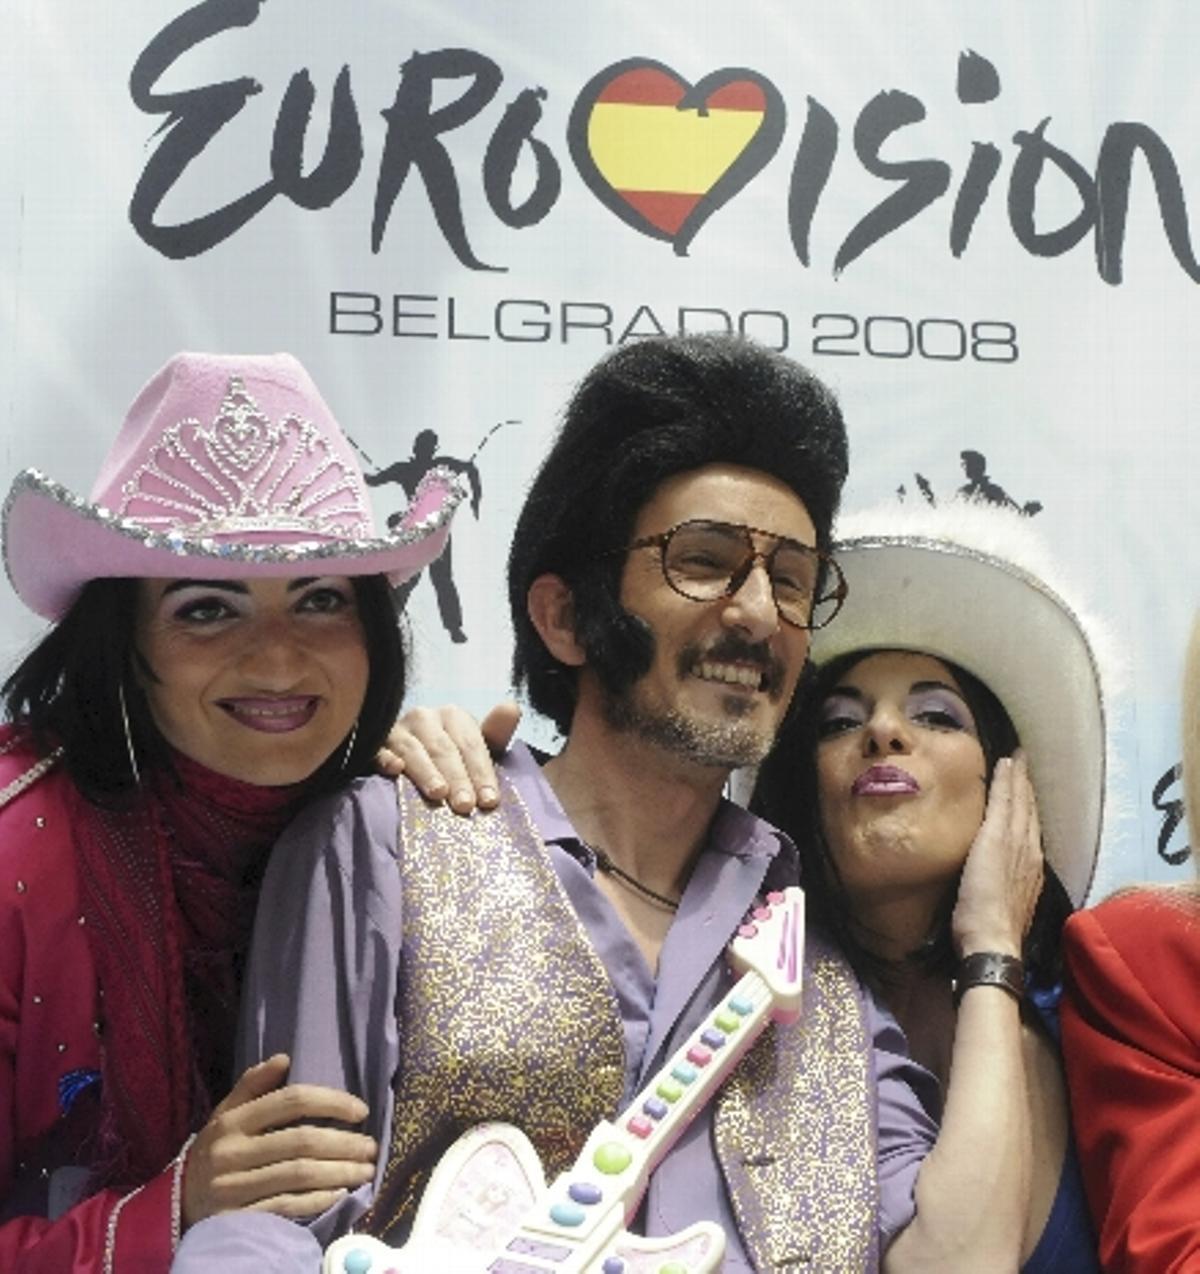 El representantes español que participó en Eurovisión en el Stark Arena de Belgrado